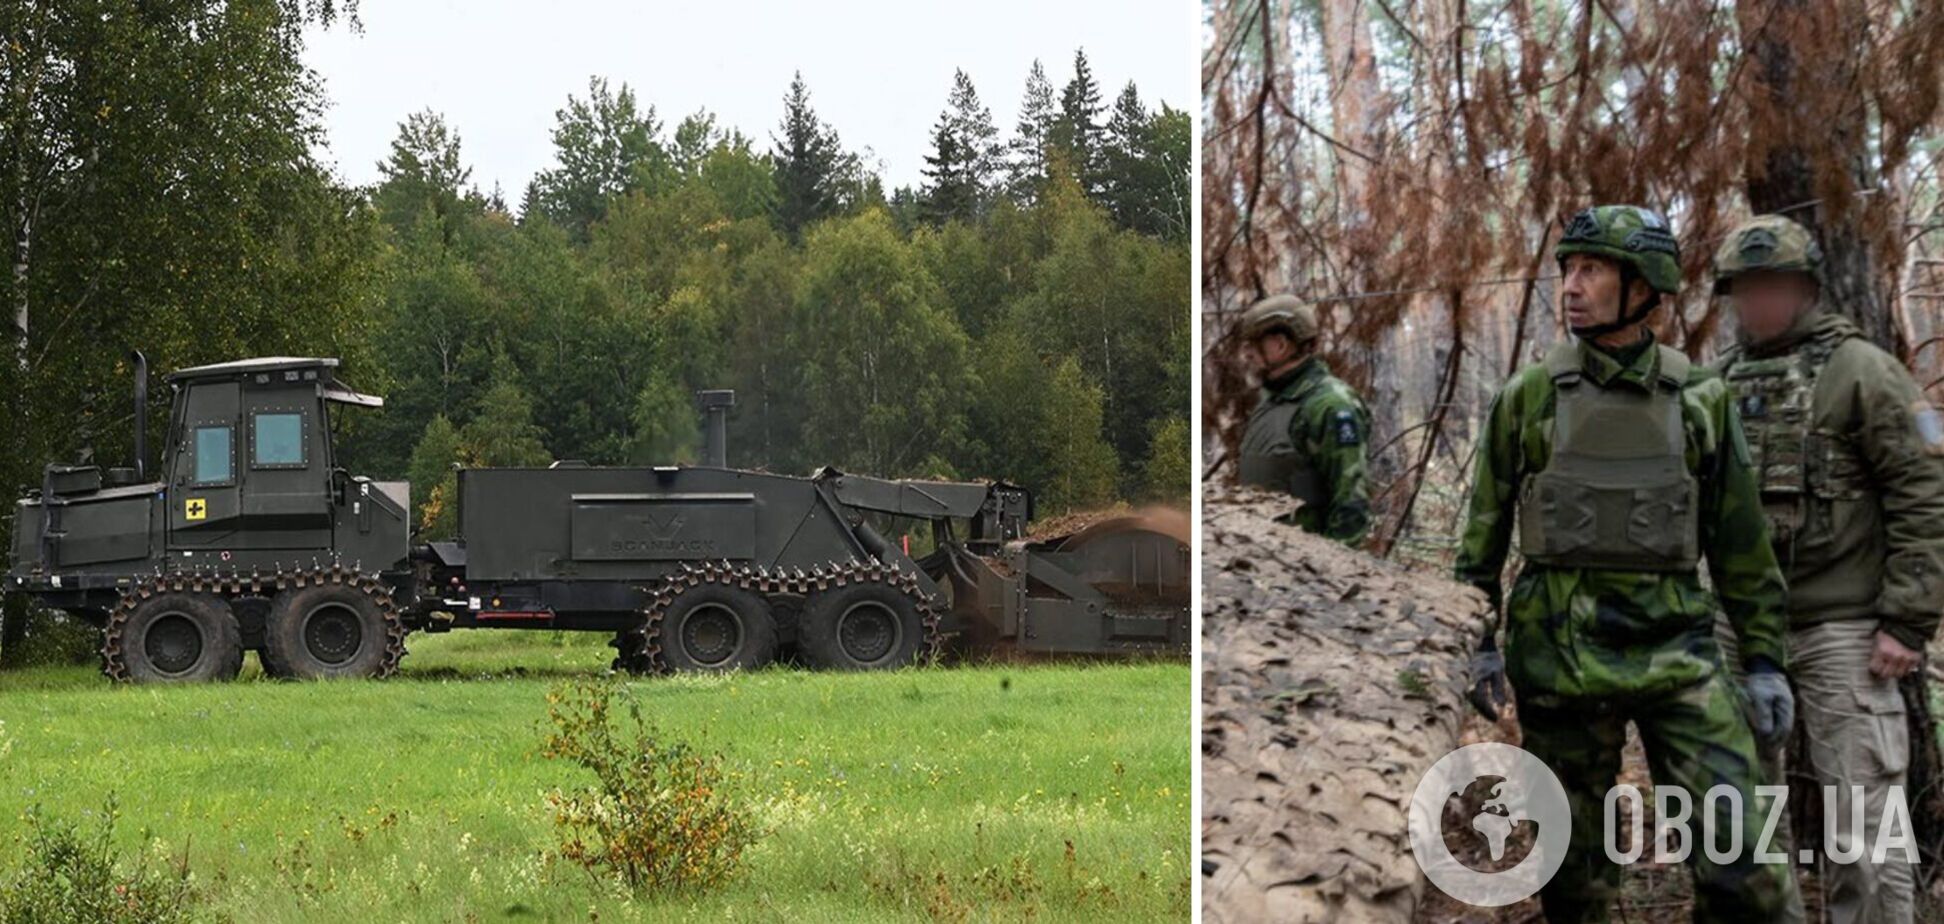 Способствует повышению безопасности: в минобороны Швеции рассказали об обучении украинских военных механическому разминированию. Фото